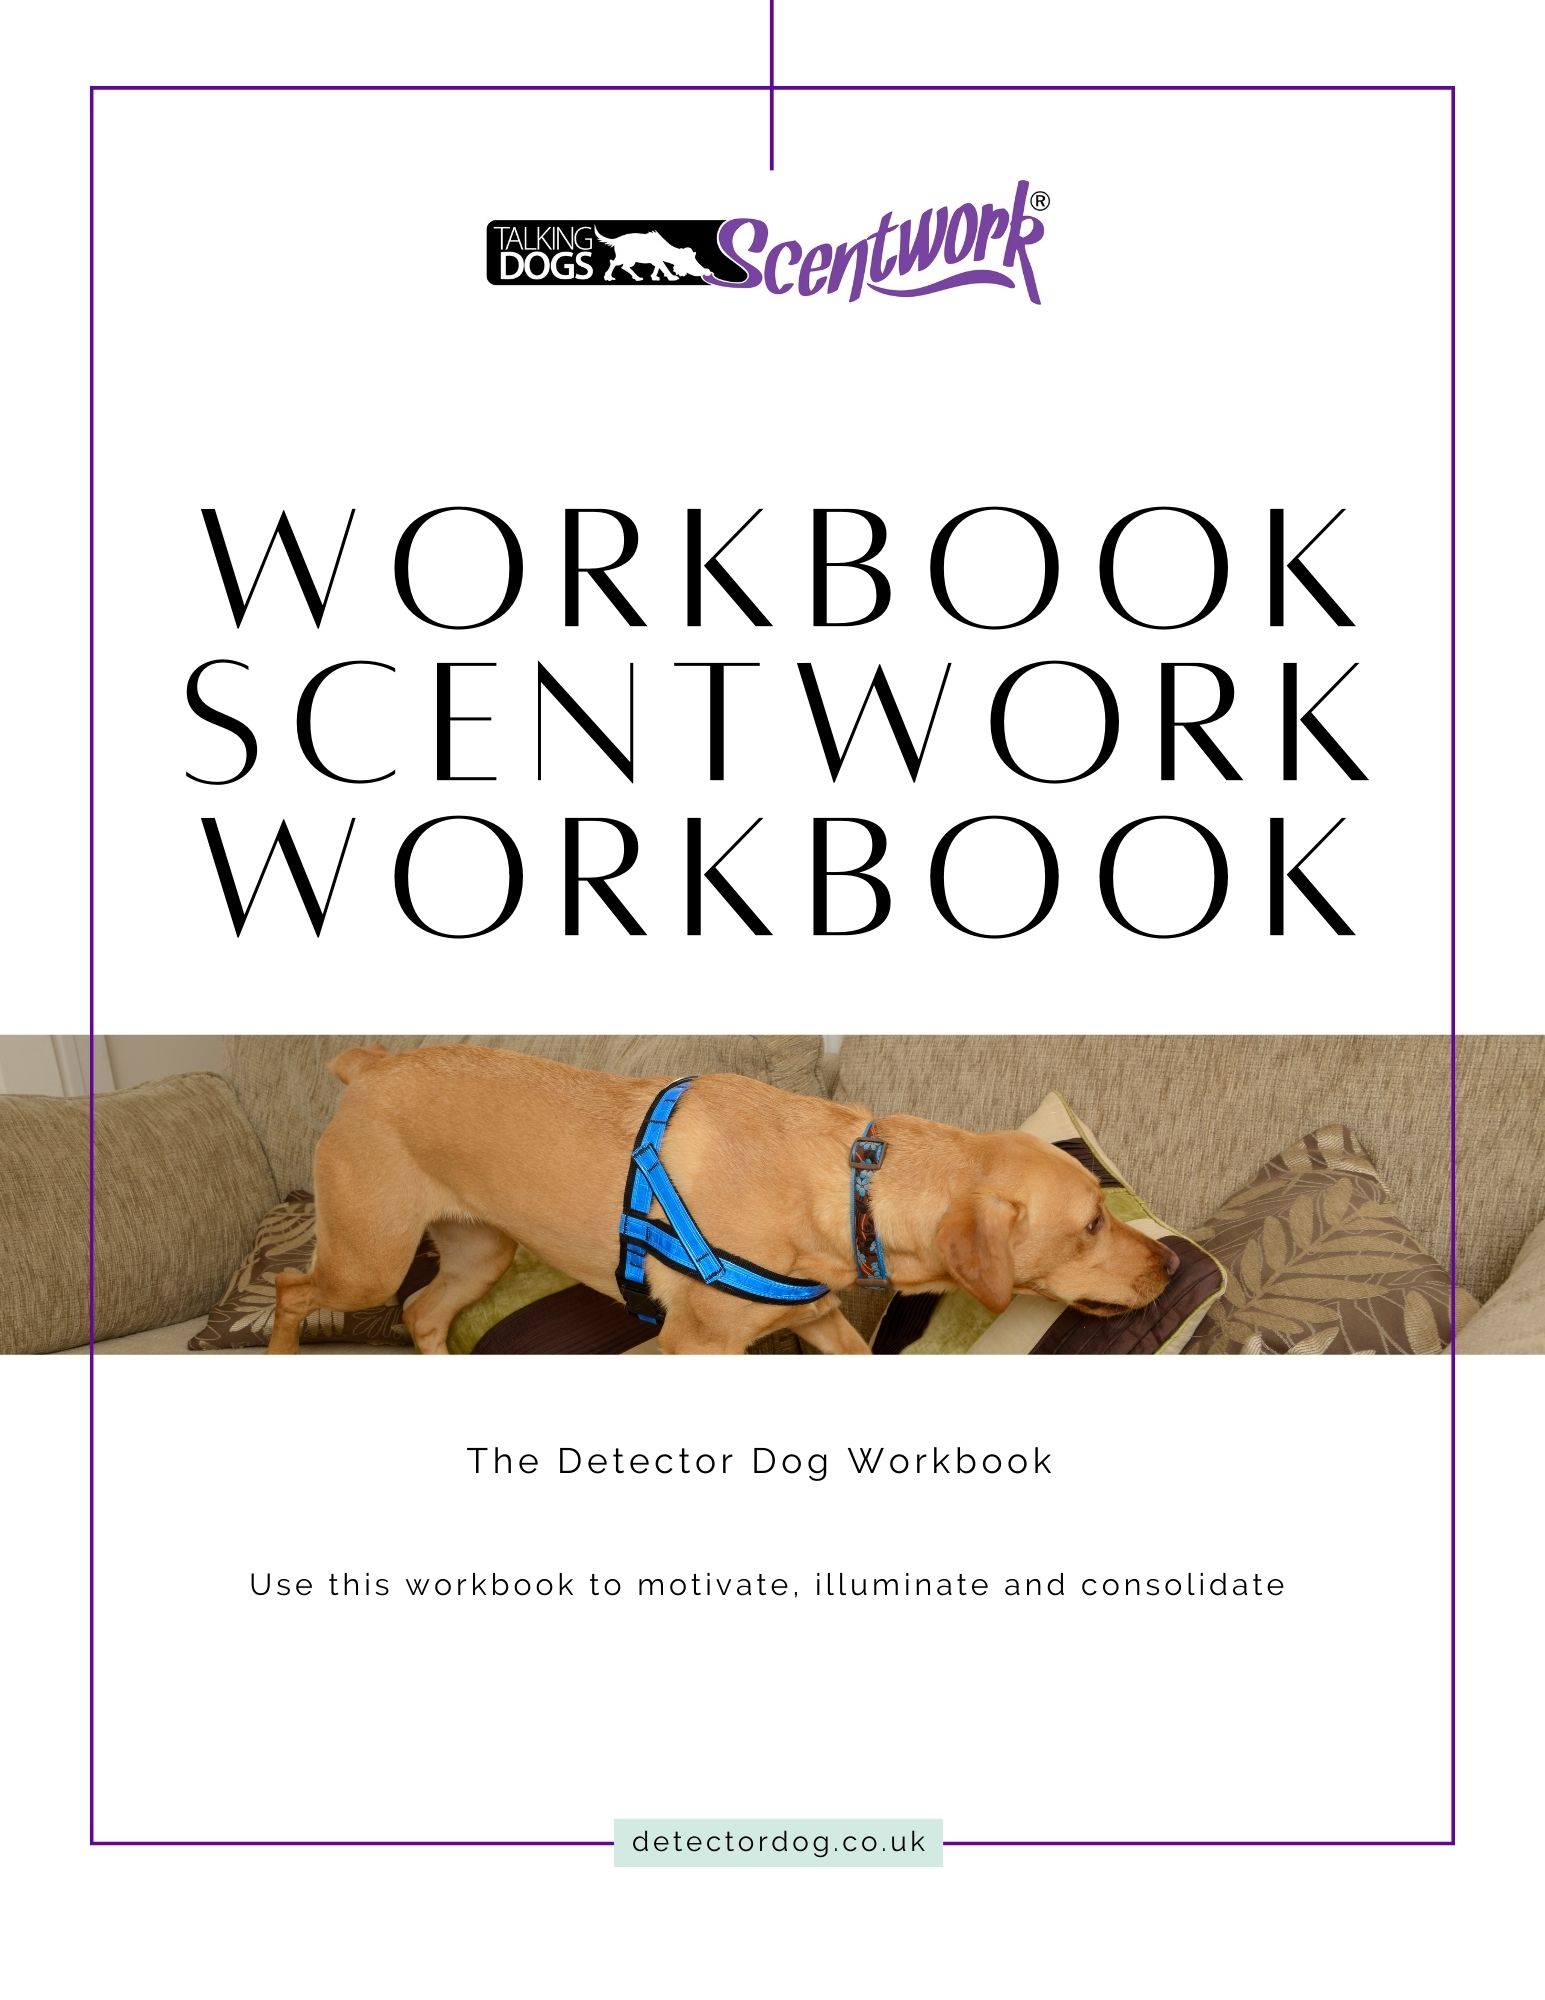 scentwork workbook cover